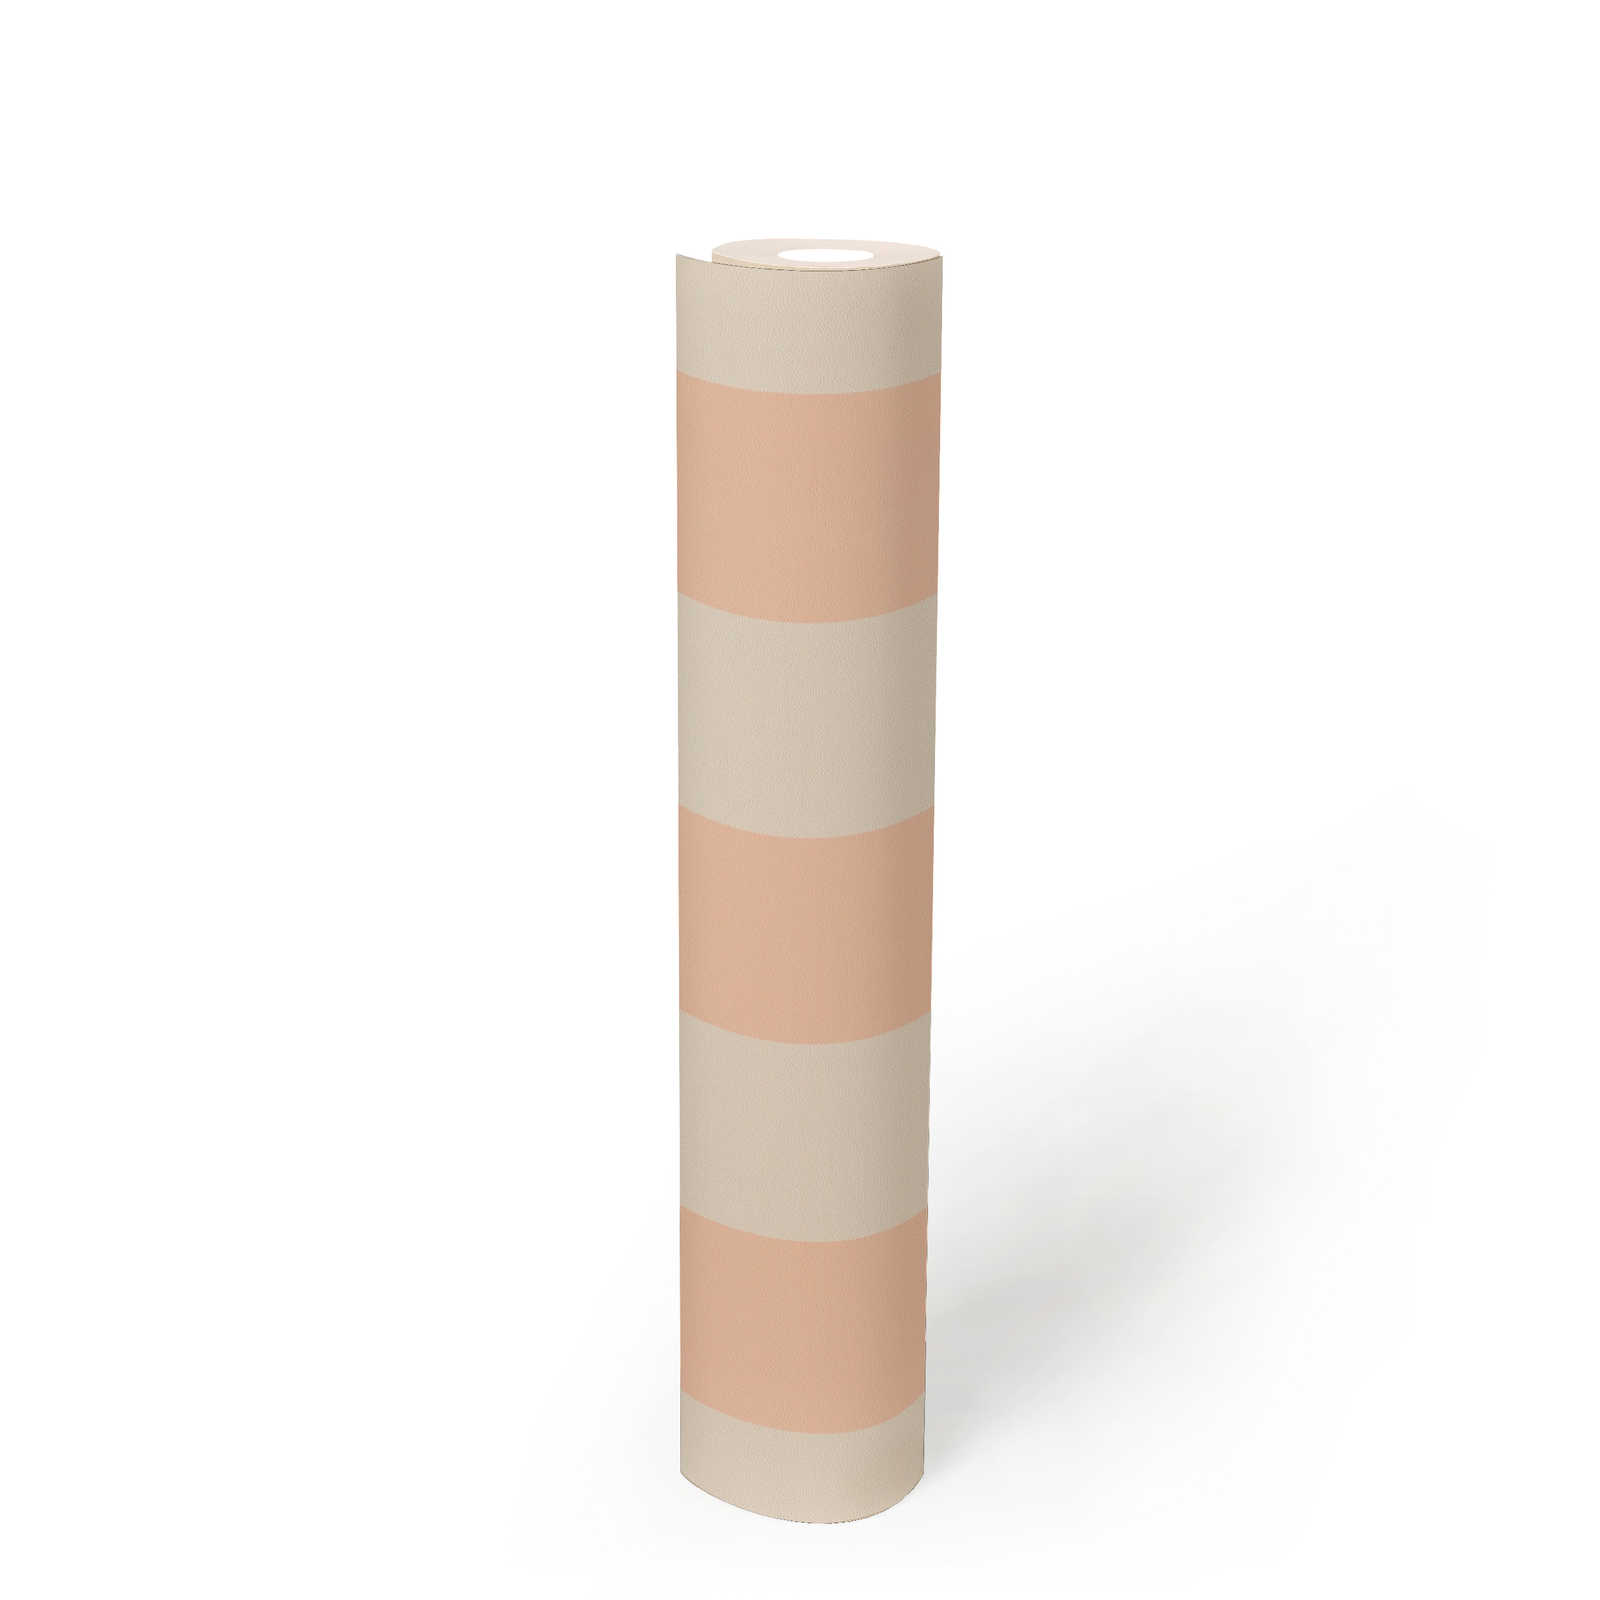             Papel pintado no tejido con rayas en bloques en tonos suaves - crema, rosa
        